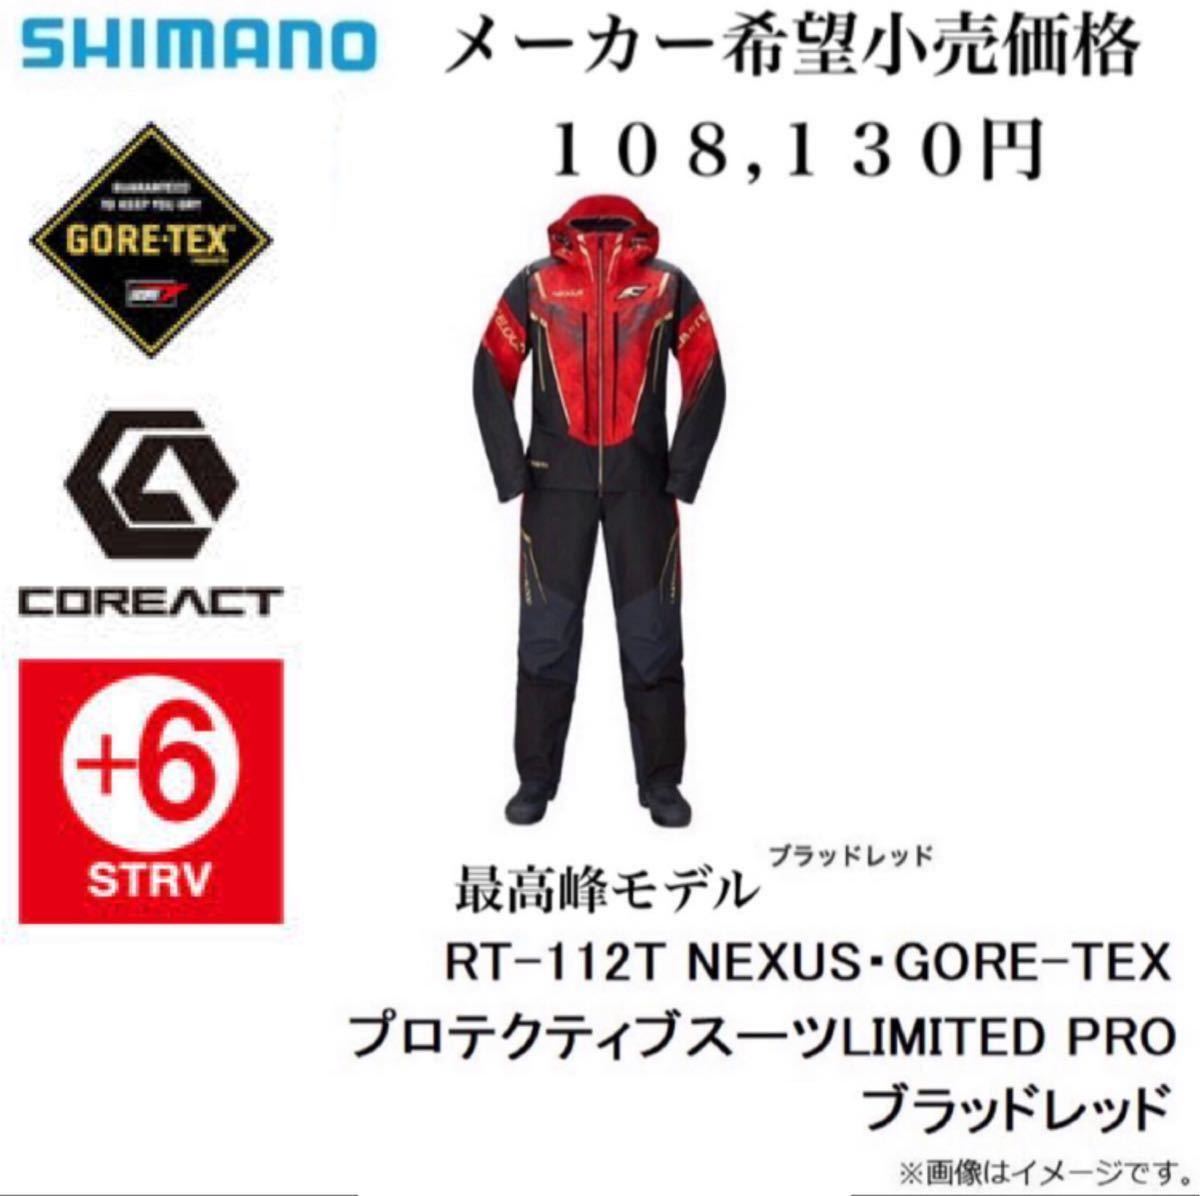 シマノ(SHIMANO)最高峰モデル サイズM 防寒 RT-112T NEXUS GORE-TEX ゴアテックス プロテクティブスーツ レインスーツ  LIMITED PRO レッド